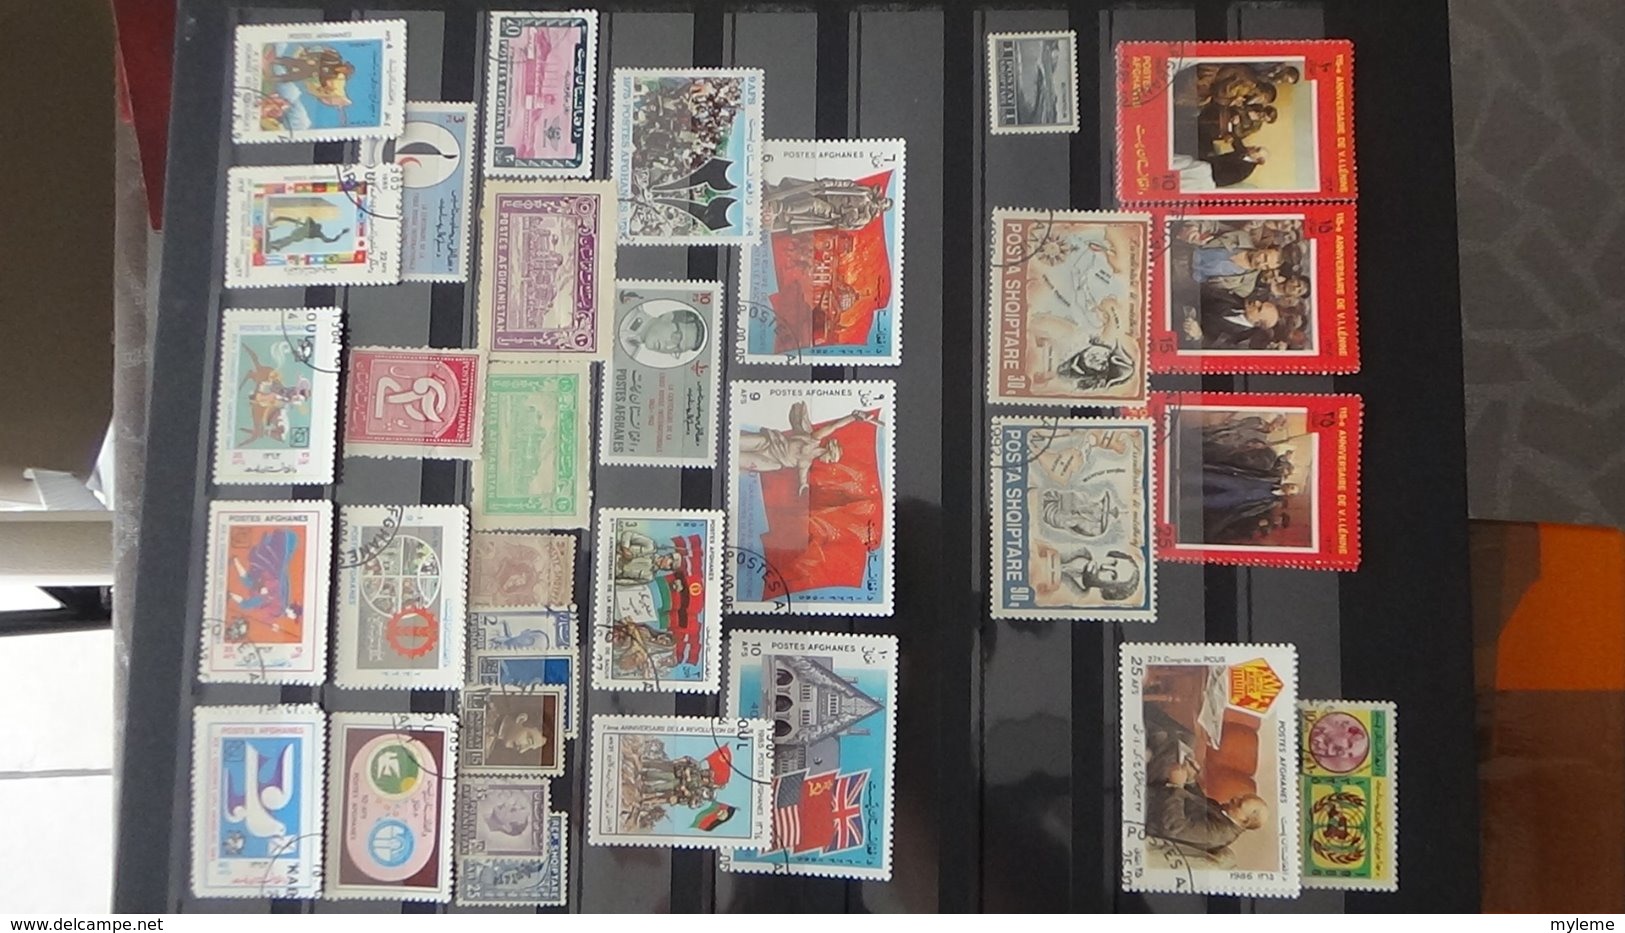 Collection timbres d'AFGHANASTAN dont des doubles superposés. Idéal pour thématiques A saisir !!!